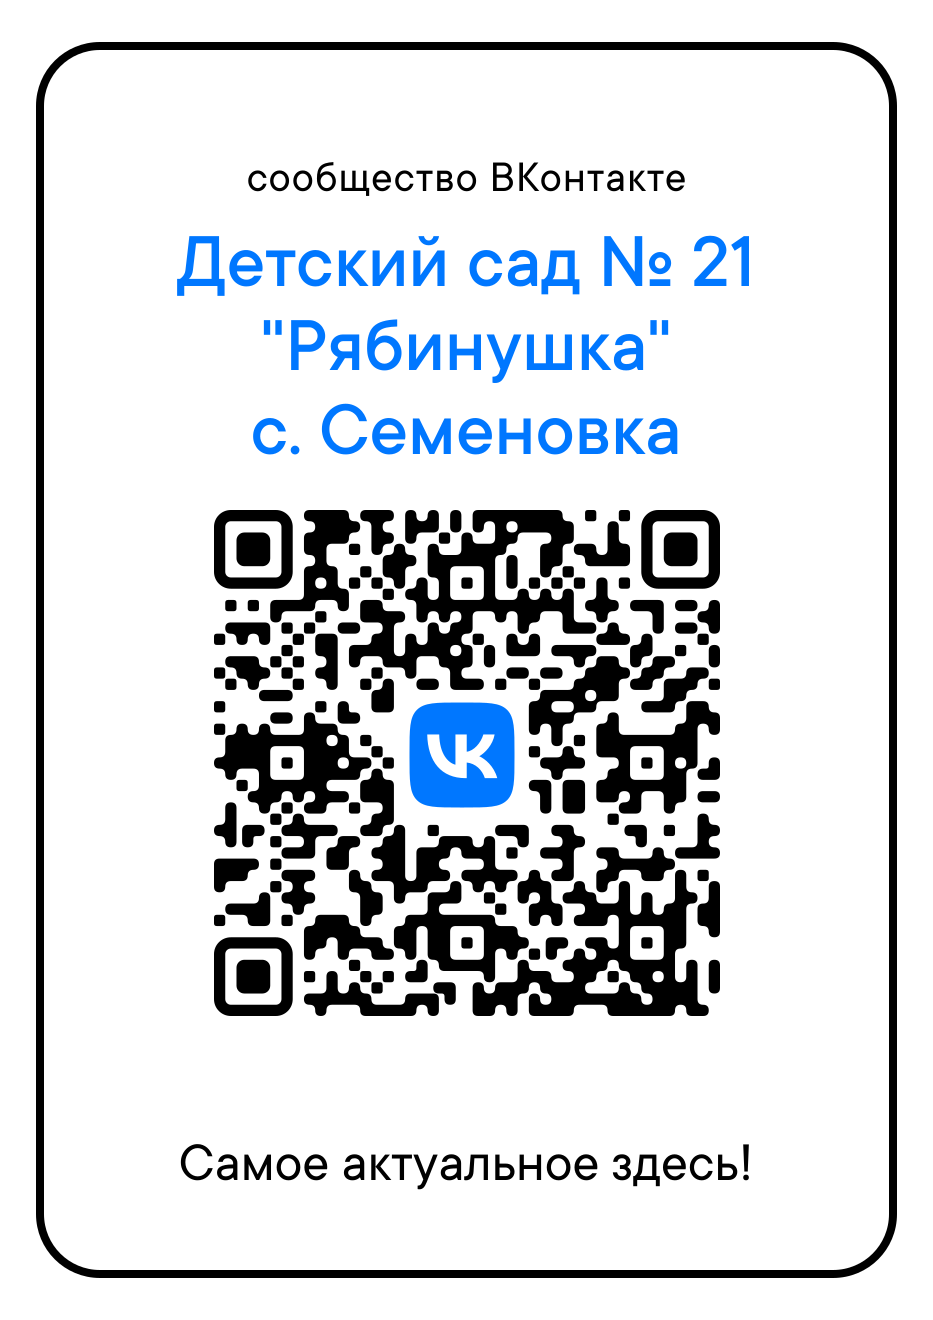 Присоединяйтесь к группе Детского сада ВКонтакте